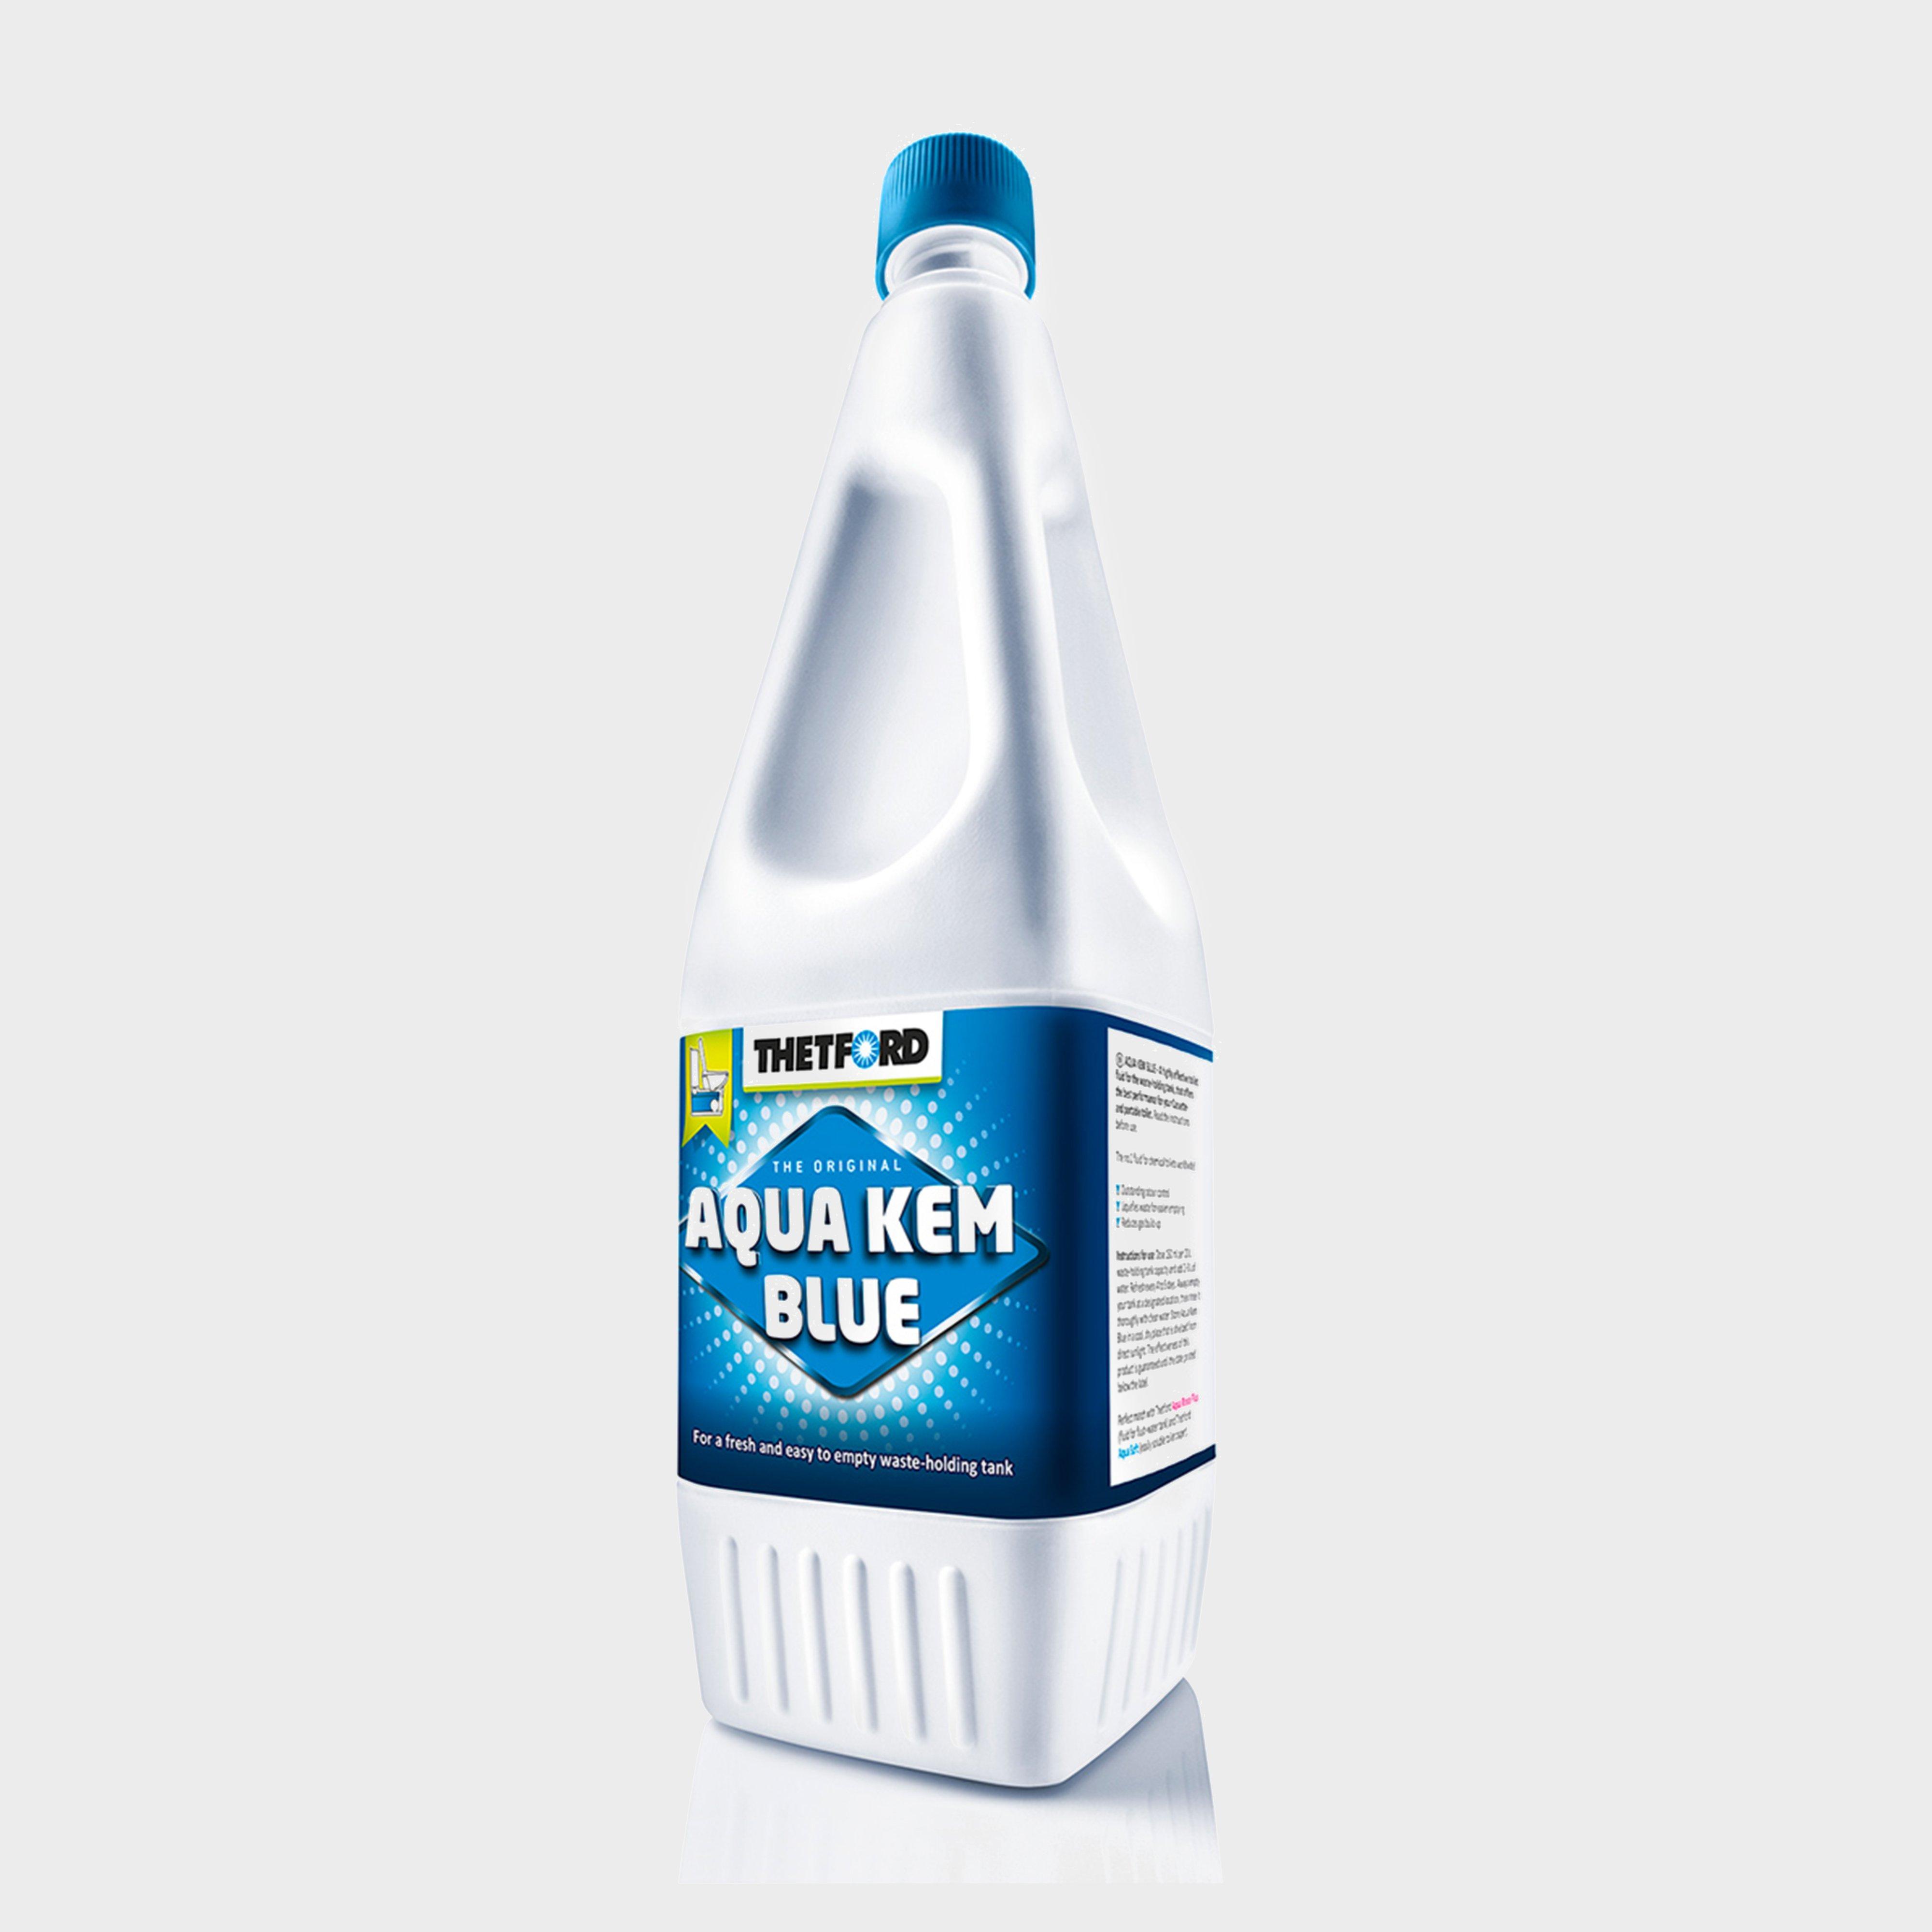 Thetford Aqua Kem Blue Toilet Fluid (2 Litre) - Multi/white  Multi/white